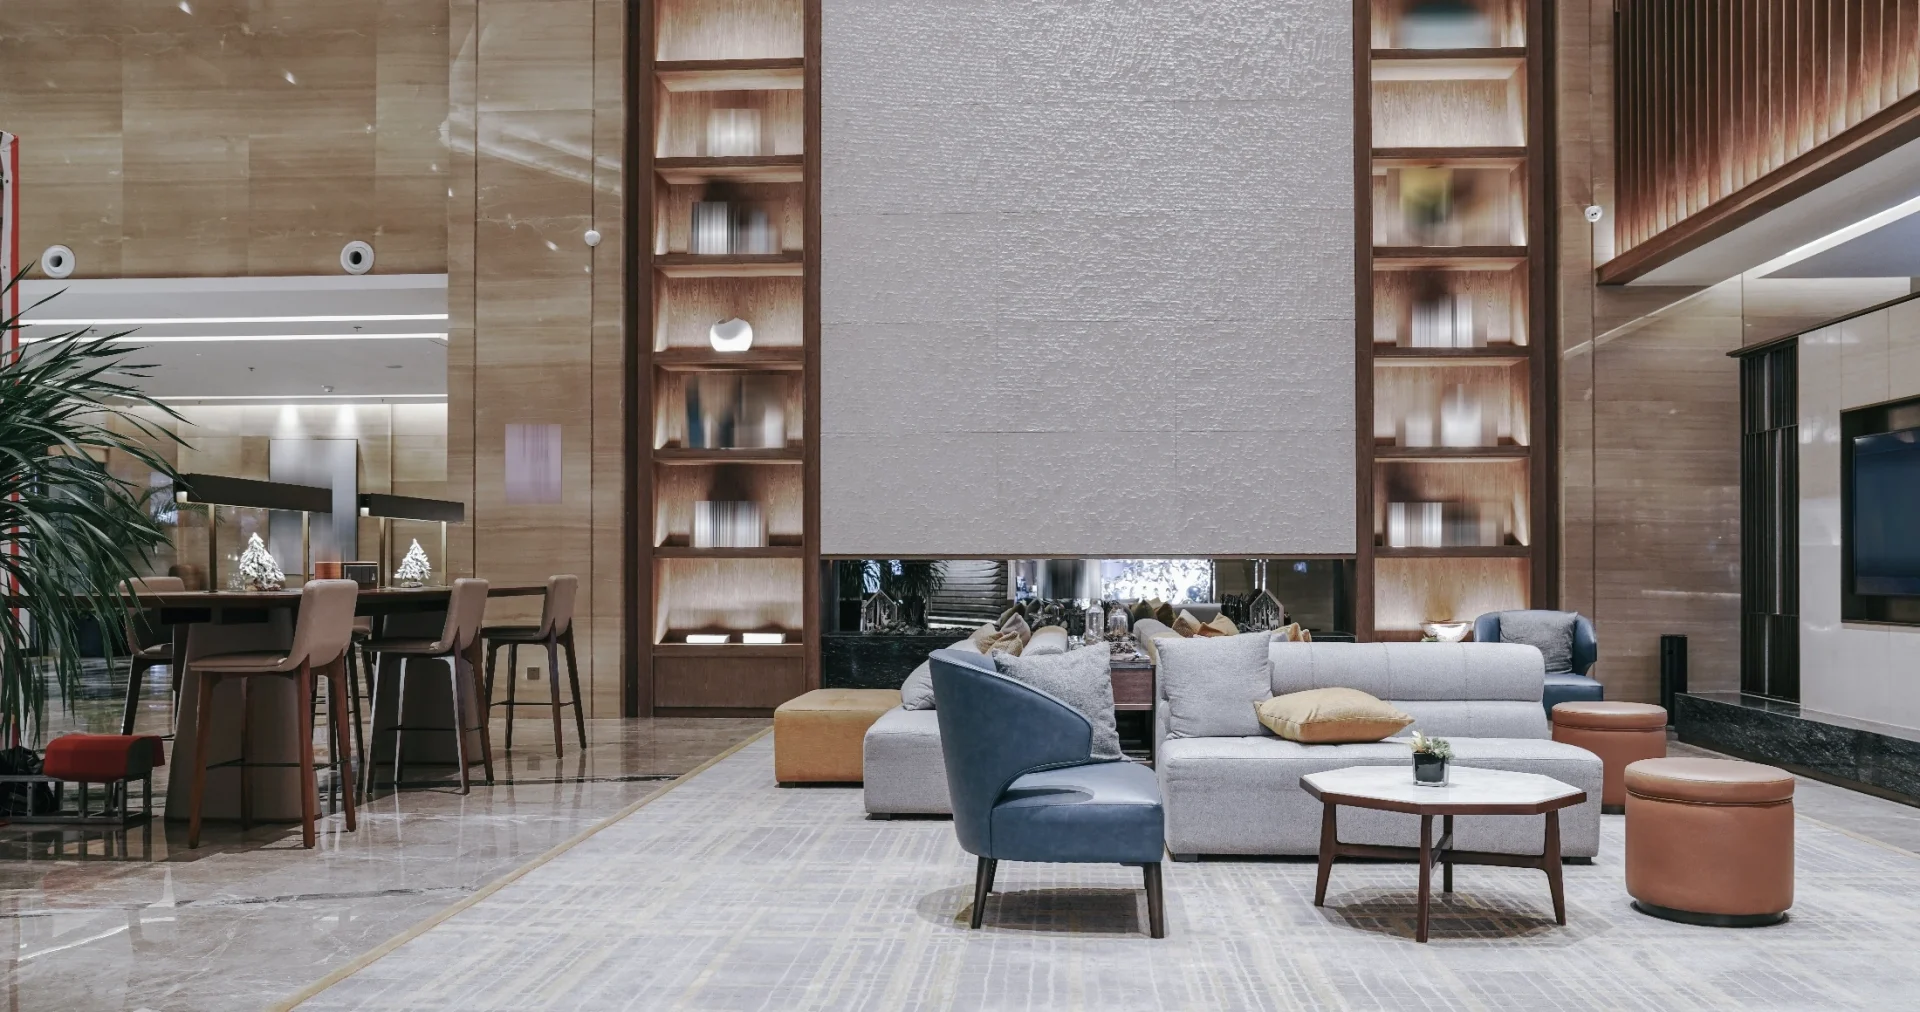 En modern lobby med en fantastisk bar som löper längs med ena kanten. Högkvalitativa möbler och stilfulla dekorativa element ger rummet en sofistikerad känsla.